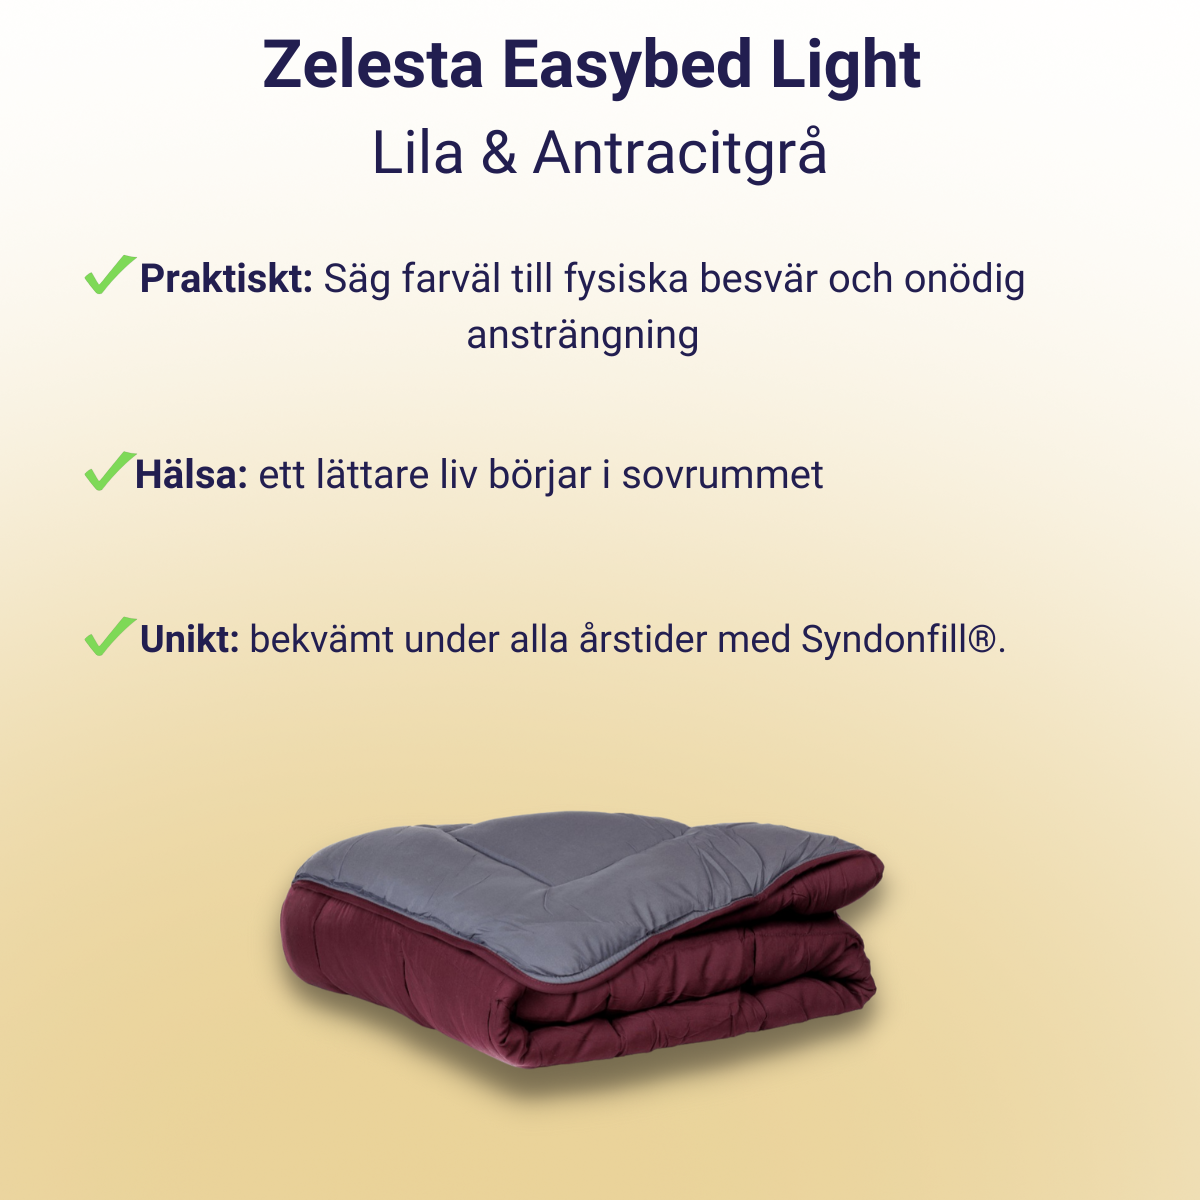 Zelesta Easybed Light - Lila & Antracitgrå